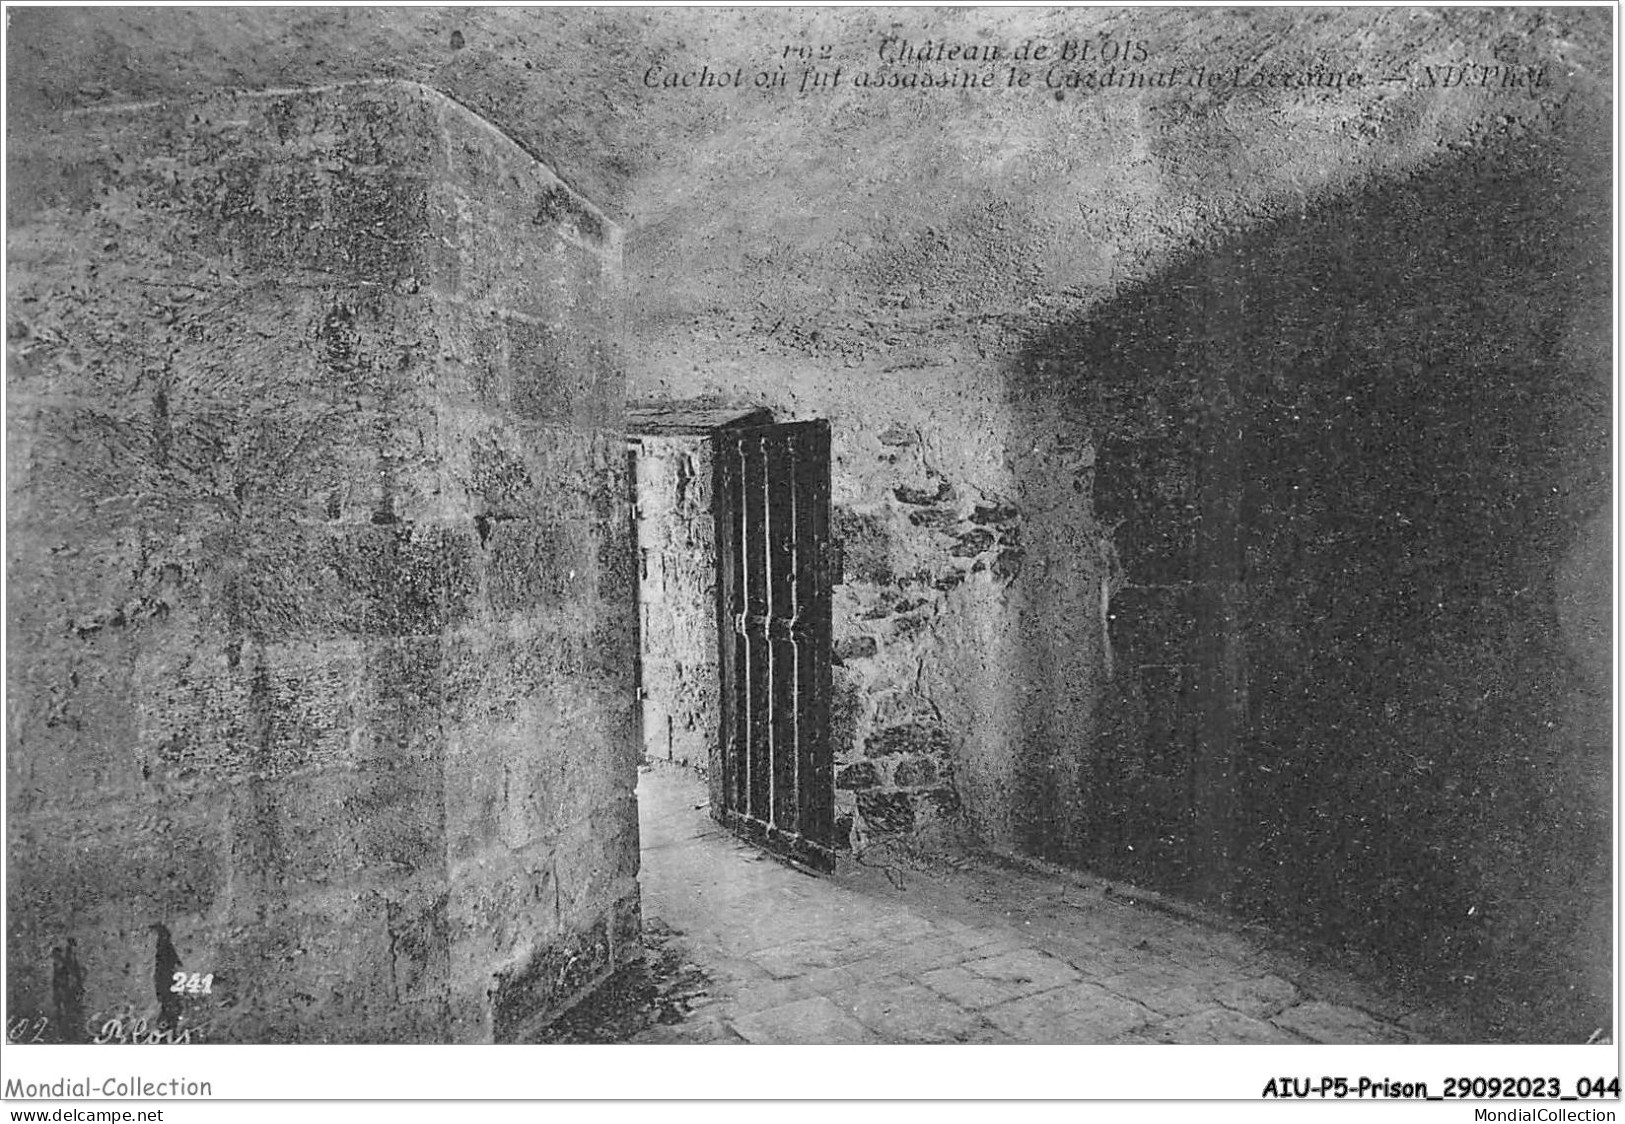 AIUP5-0428 - PRISON - Chateau De Blois - Cachot Ou Fut Assasiné Le Cardinal - Prison